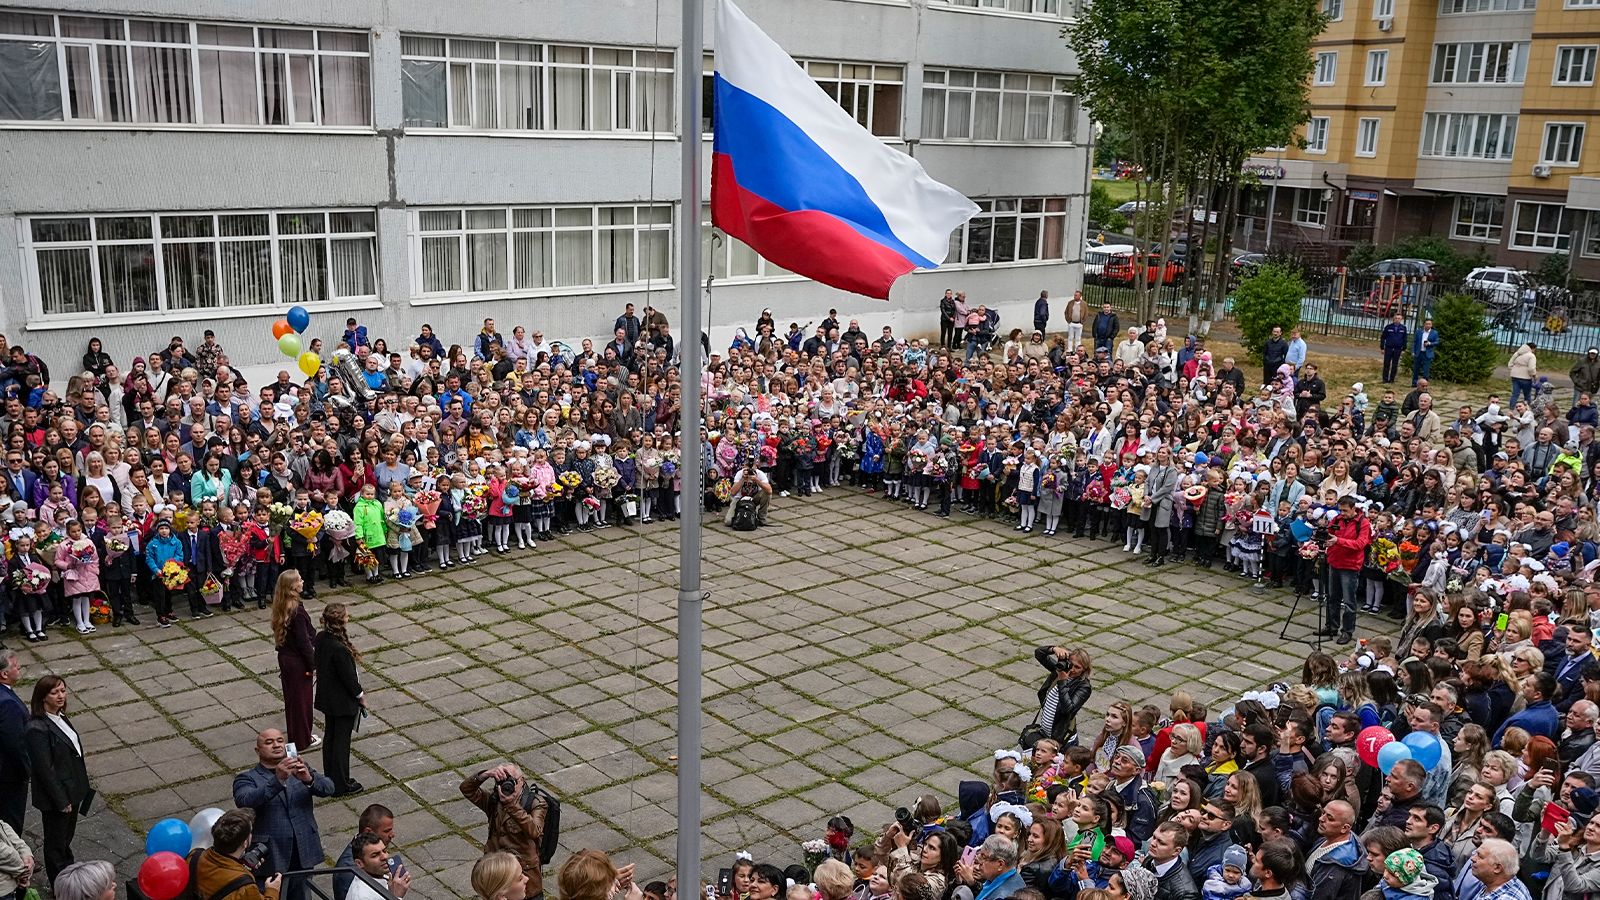 Более 80% родителей поддерживают поднятие флага и исполнение гимна РФ в школах